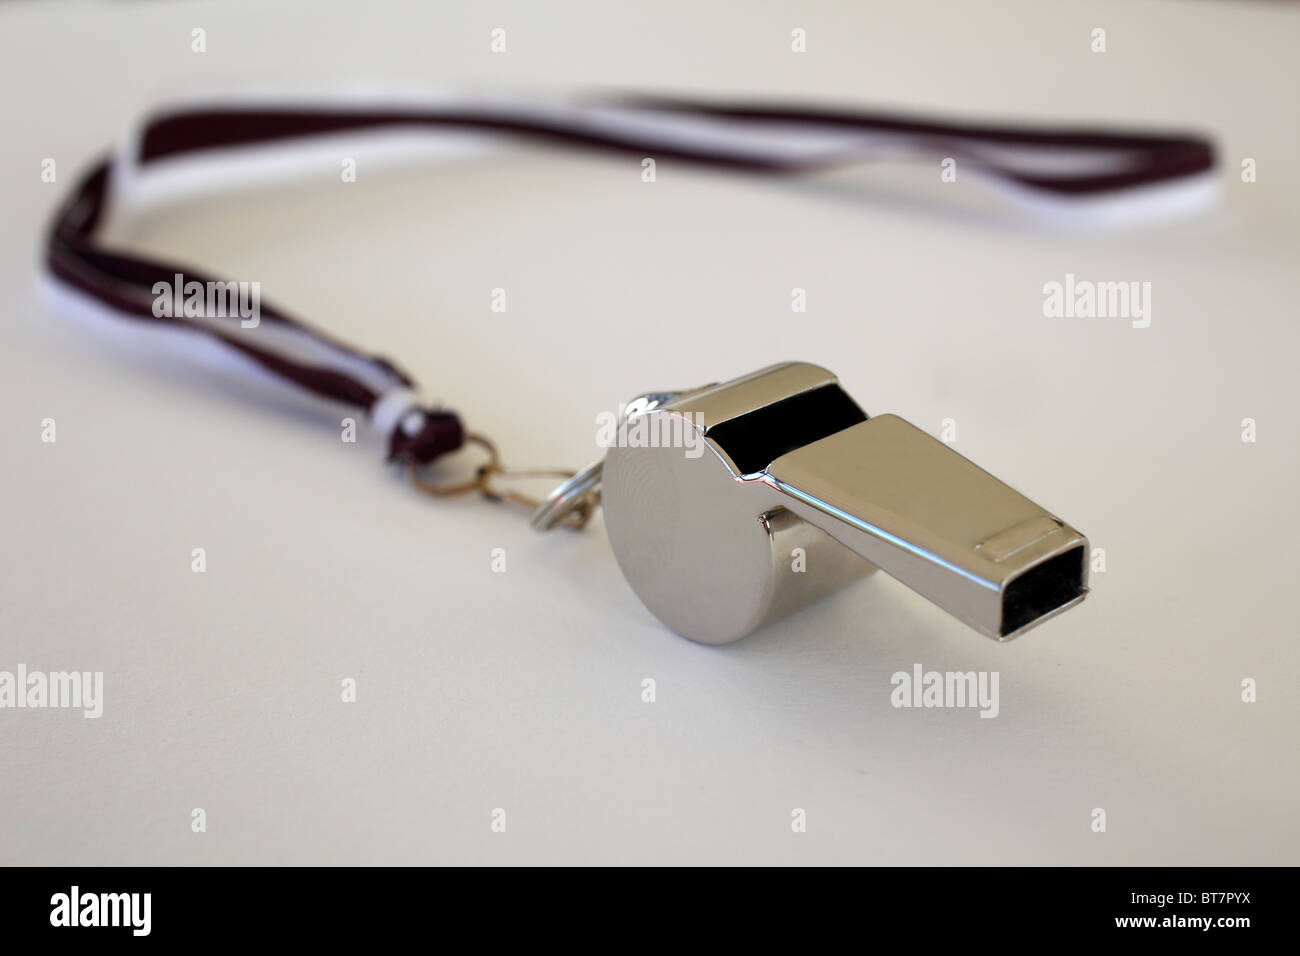 Silver whistle on white background Stock Photo